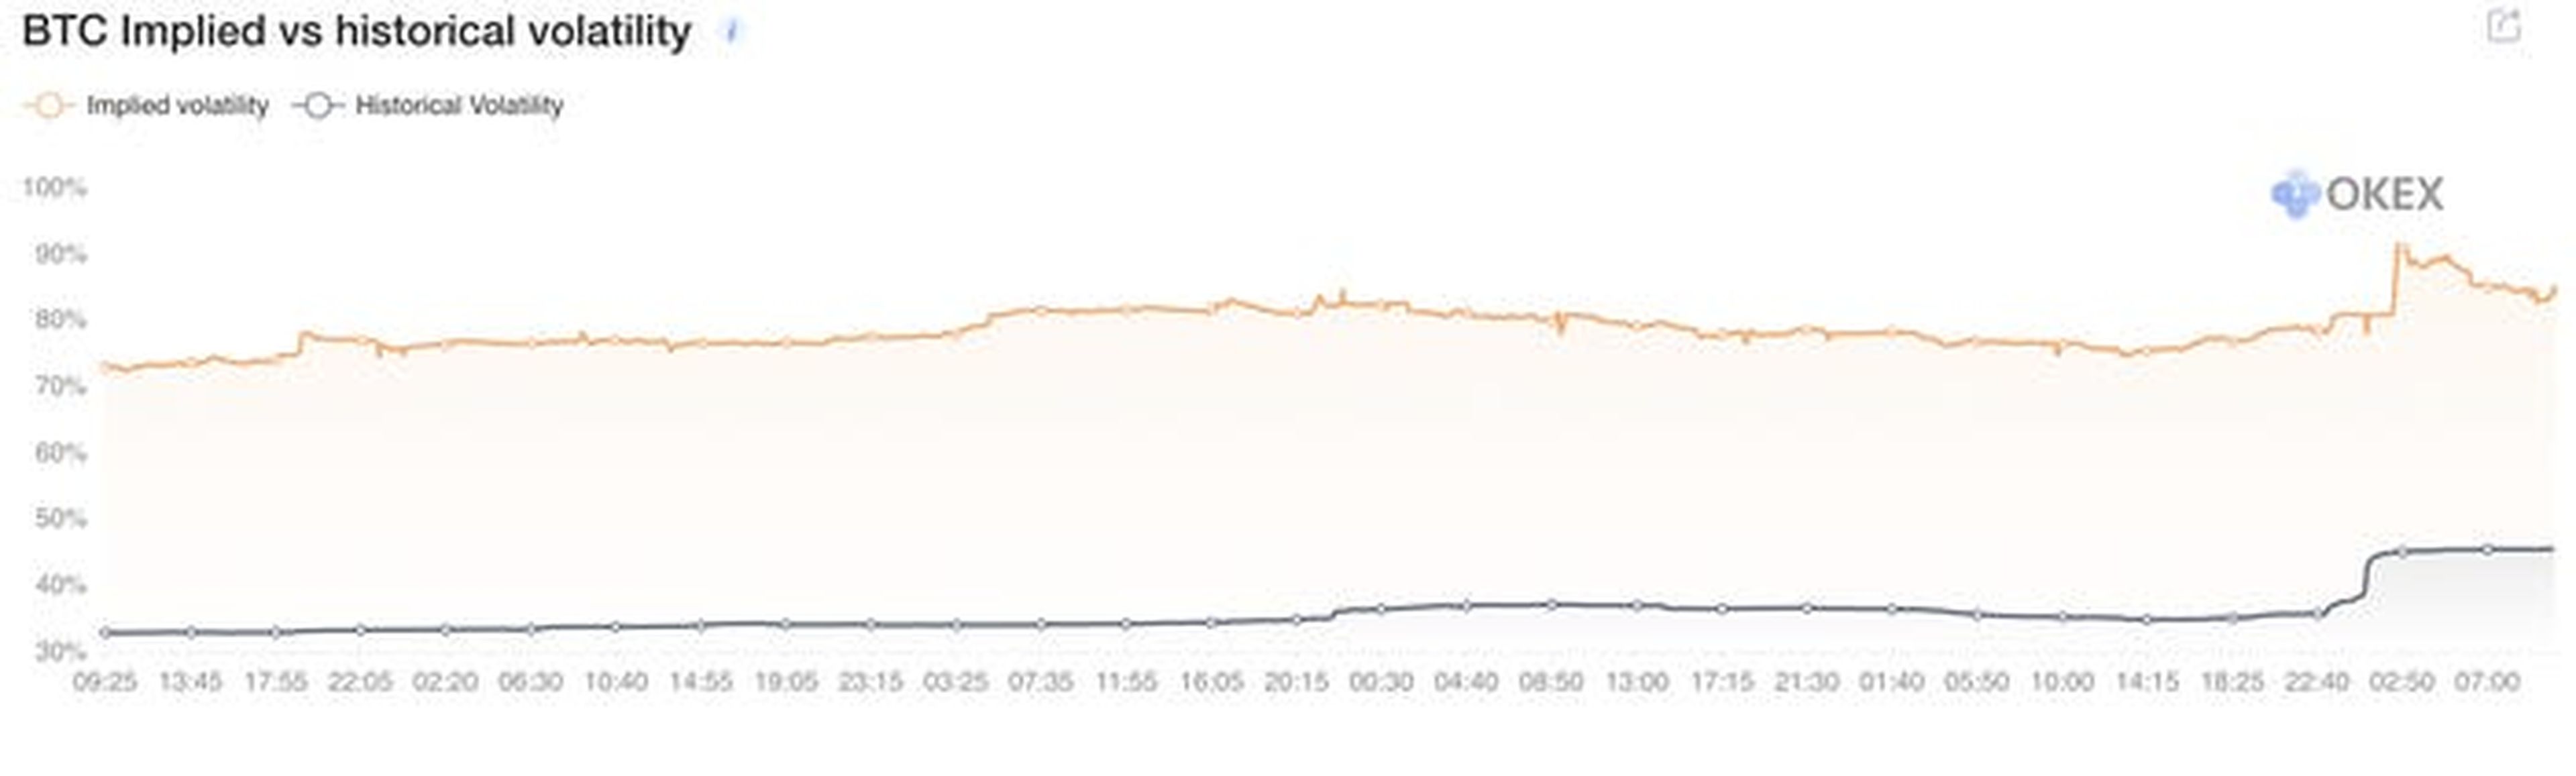 Opciones de Bitcoin implícitas frente a la volatilidad histórica de Okex.